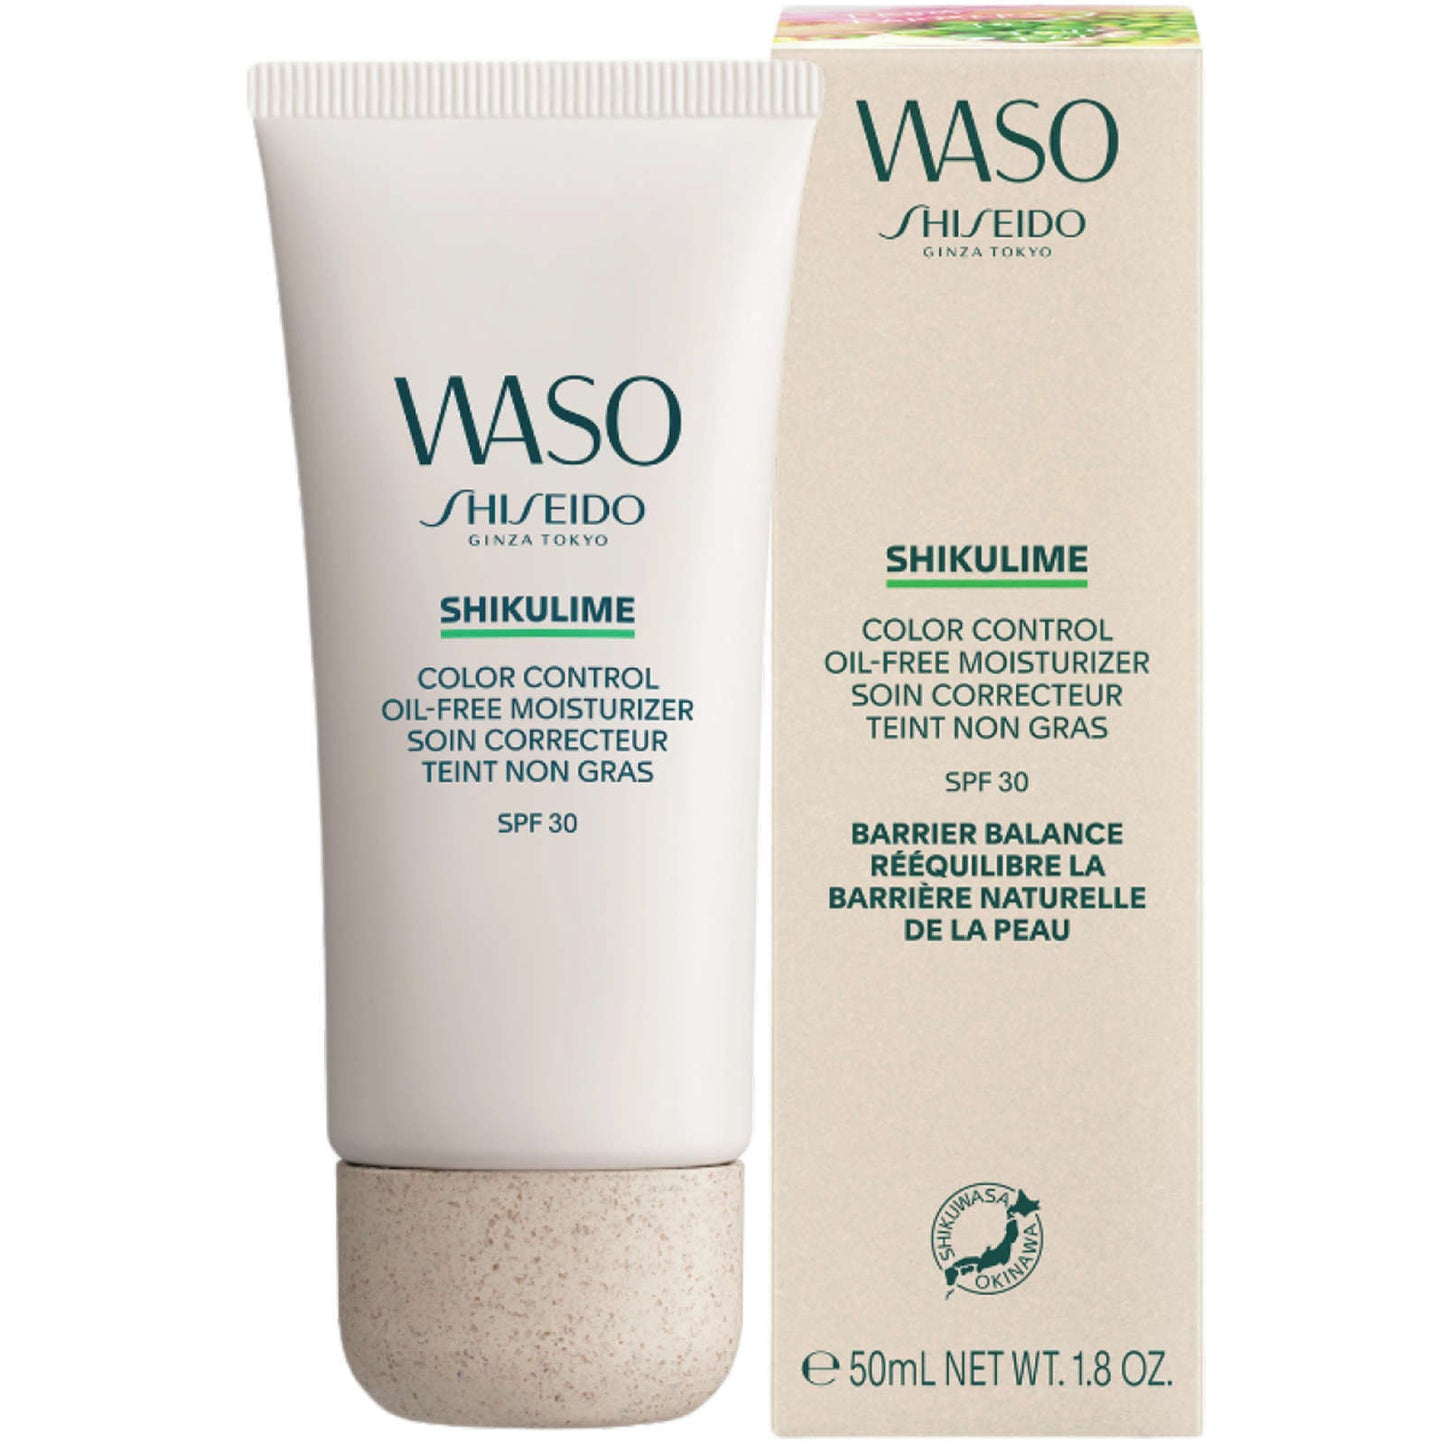 Shiseido WASO SHIKULIME Color Oil-Free Moisturizer Broad Spec SPF30 50ml NEW